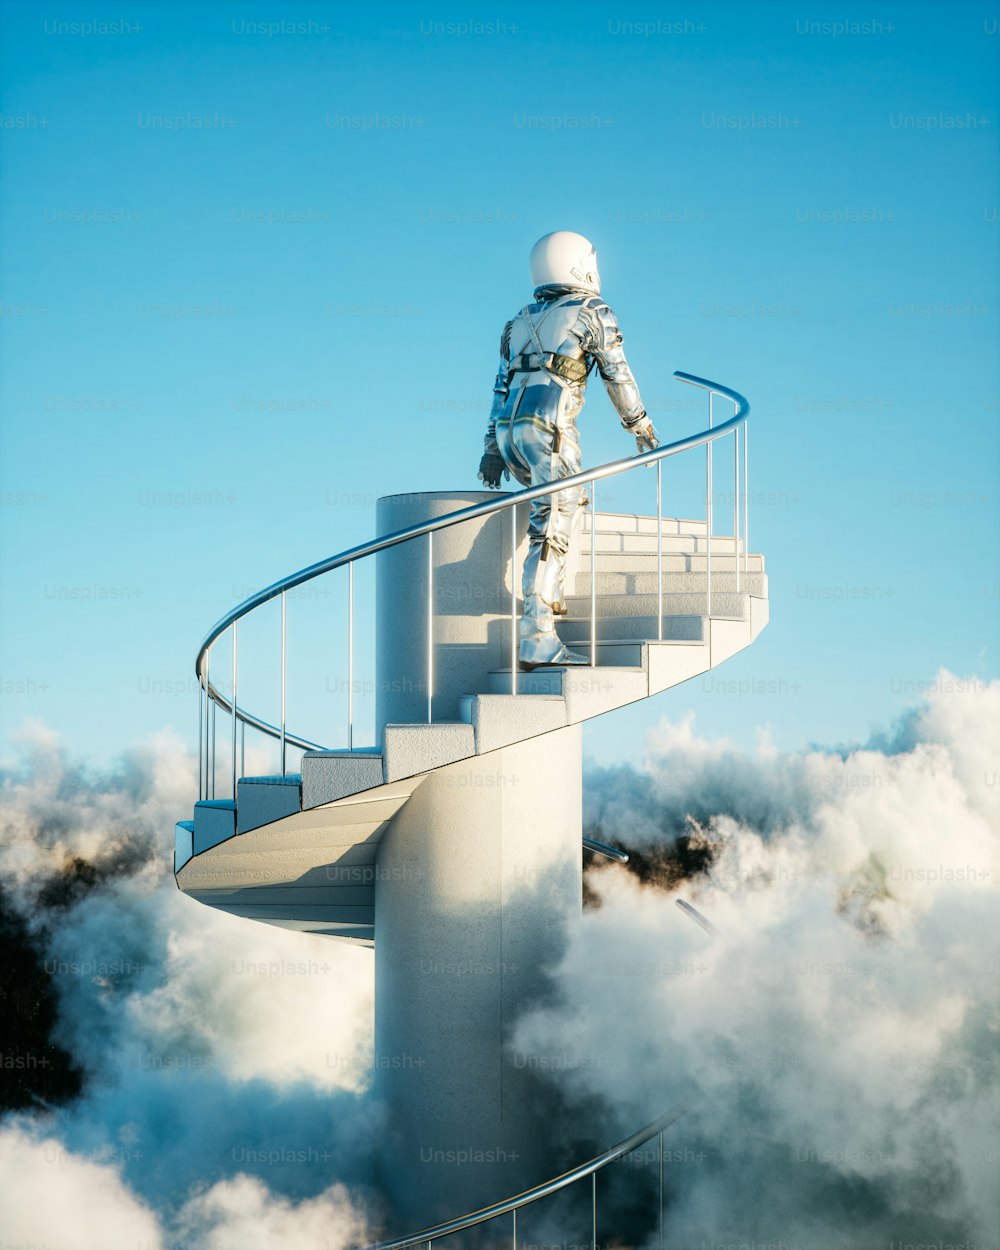 Un uomo in una tuta spaziale in piedi su una scala a chiocciola